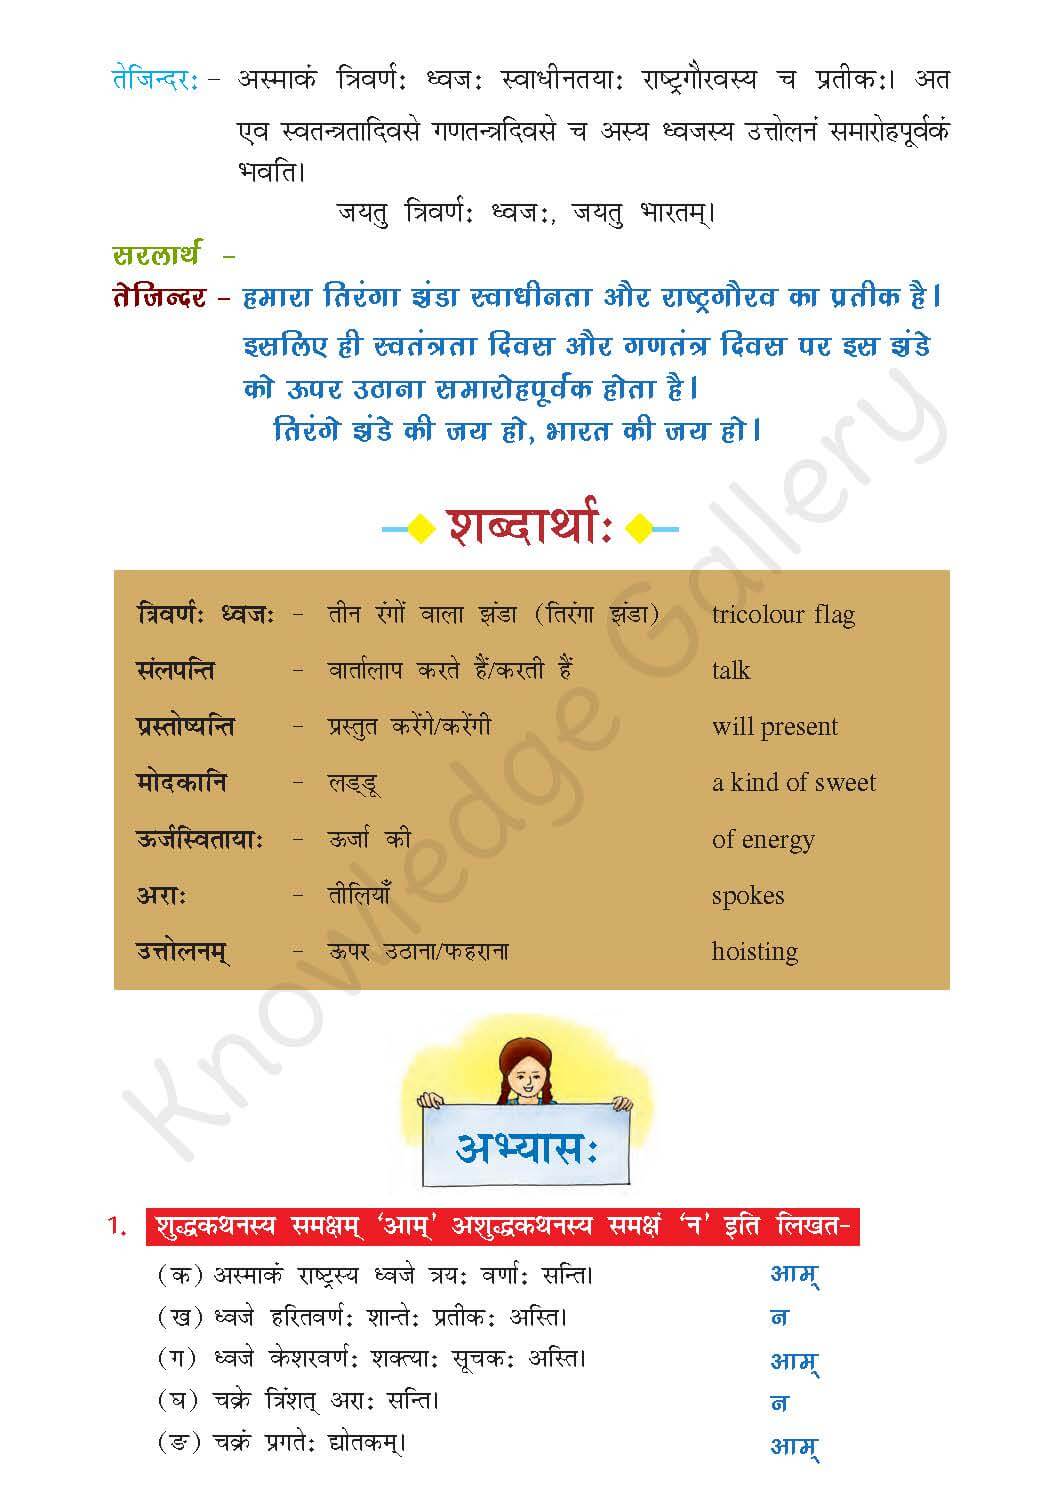 NCERT Solution For Class 7 Sanskrit Chapter 7 part 3